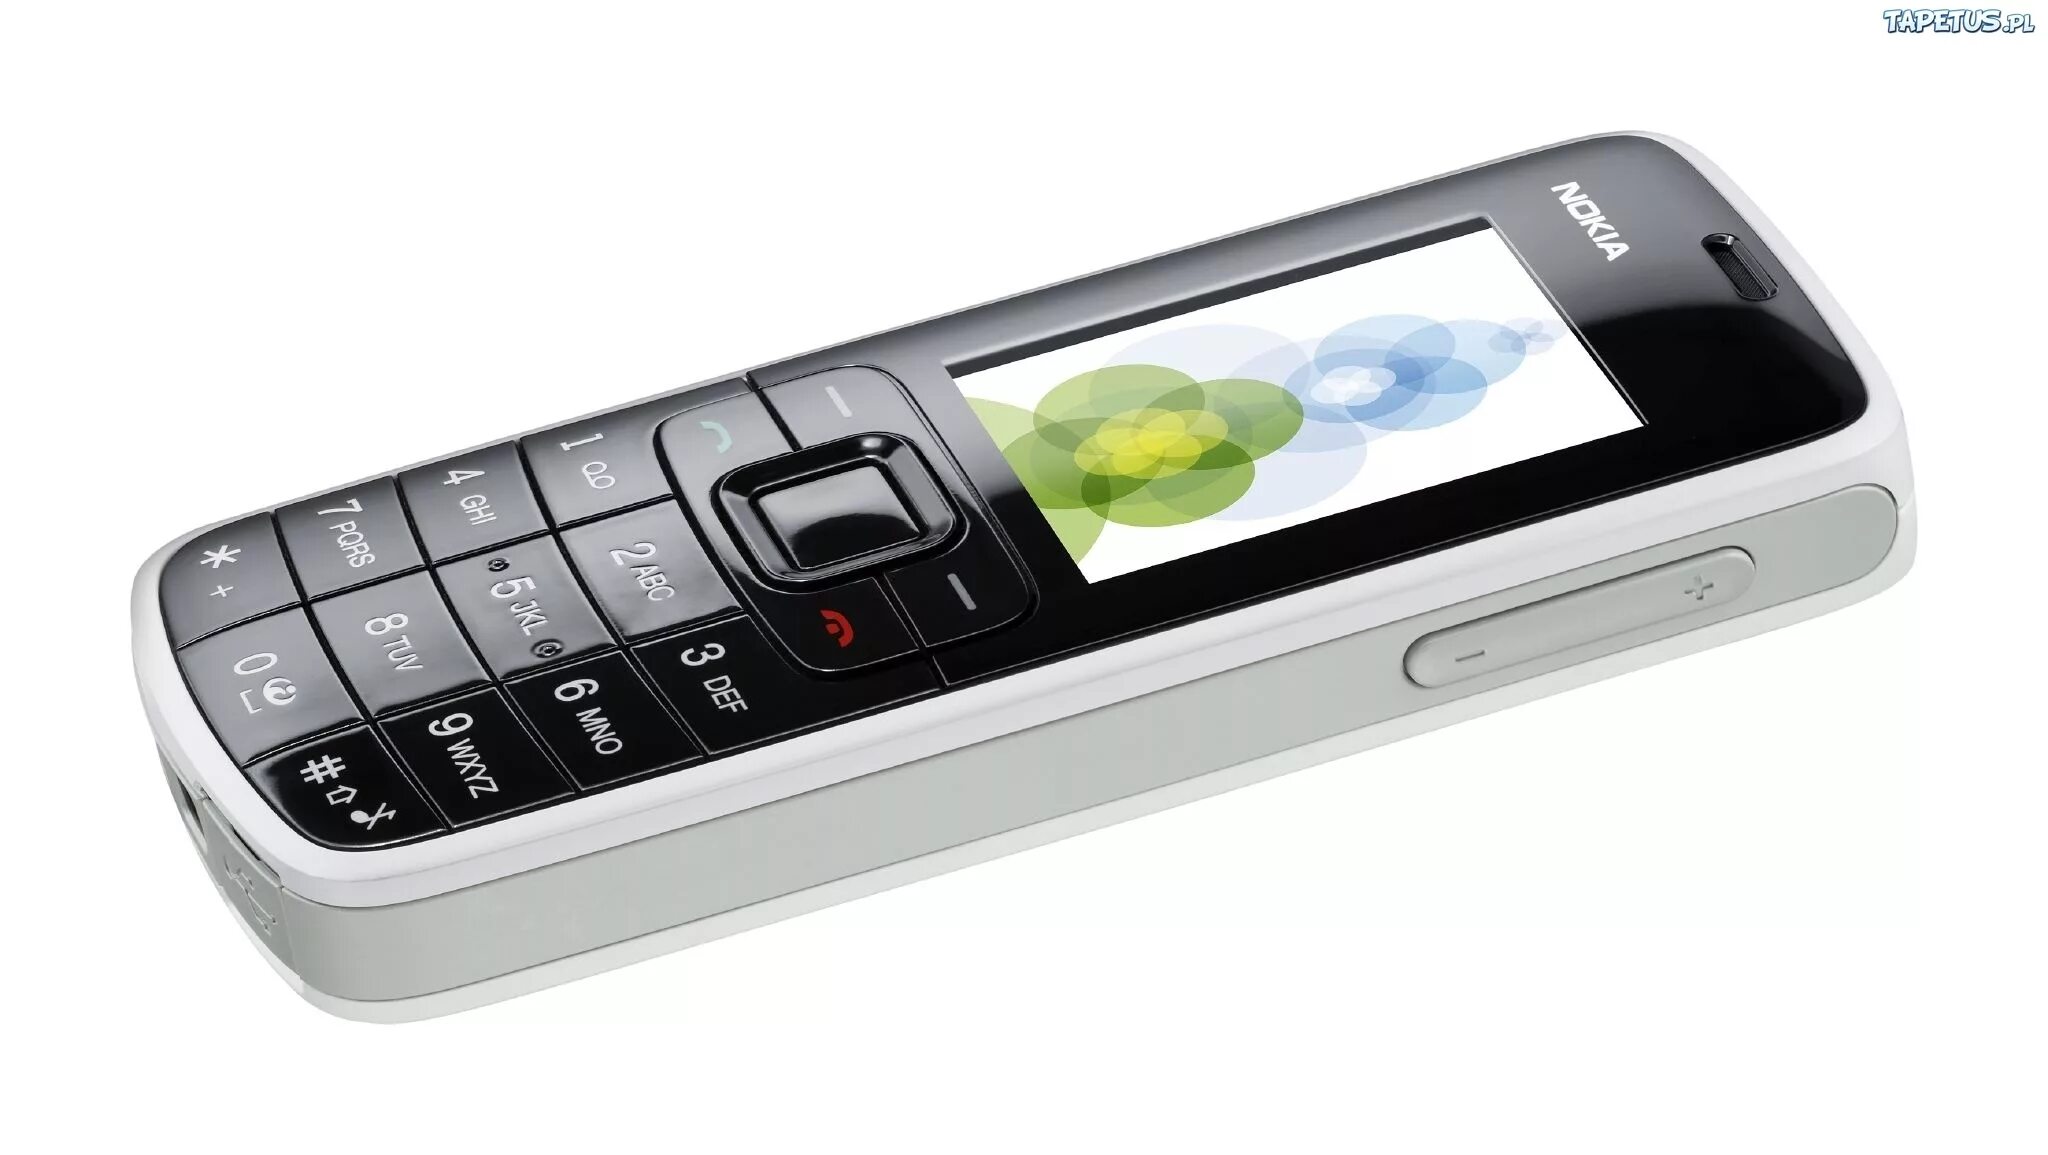 Телефон эвою. 3110.Nokia Nokia 3110. Nokia 3110 Evolve. Nokia кнопочный 3110. Современные телефоны.